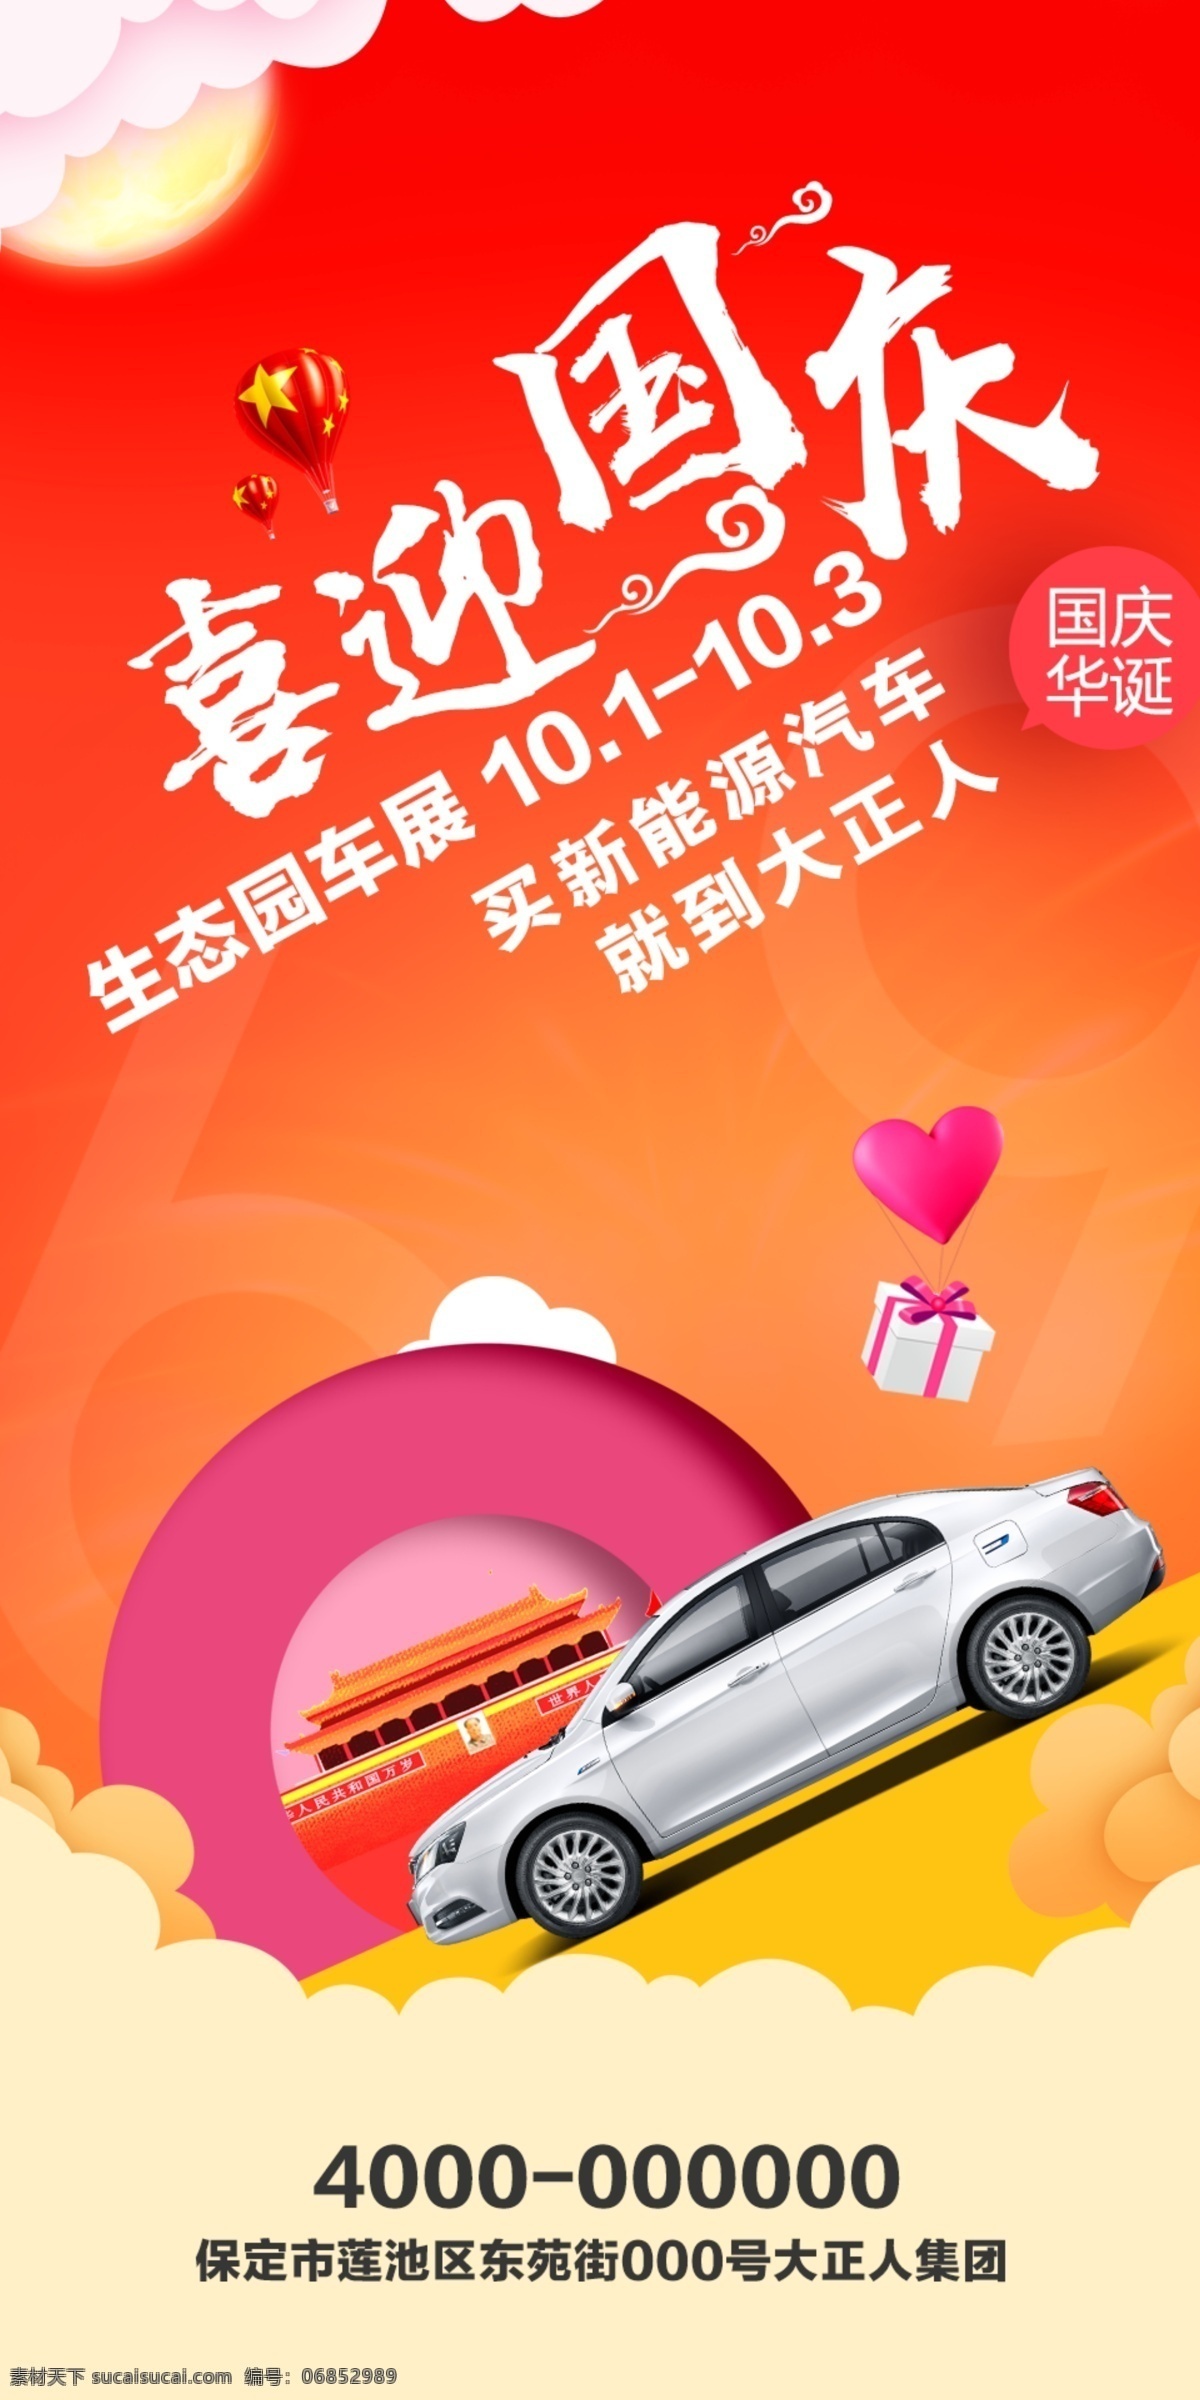 国庆节 活动 海报 汽车 车展 活动海报 促销 宣传 喜迎国庆 节日海报